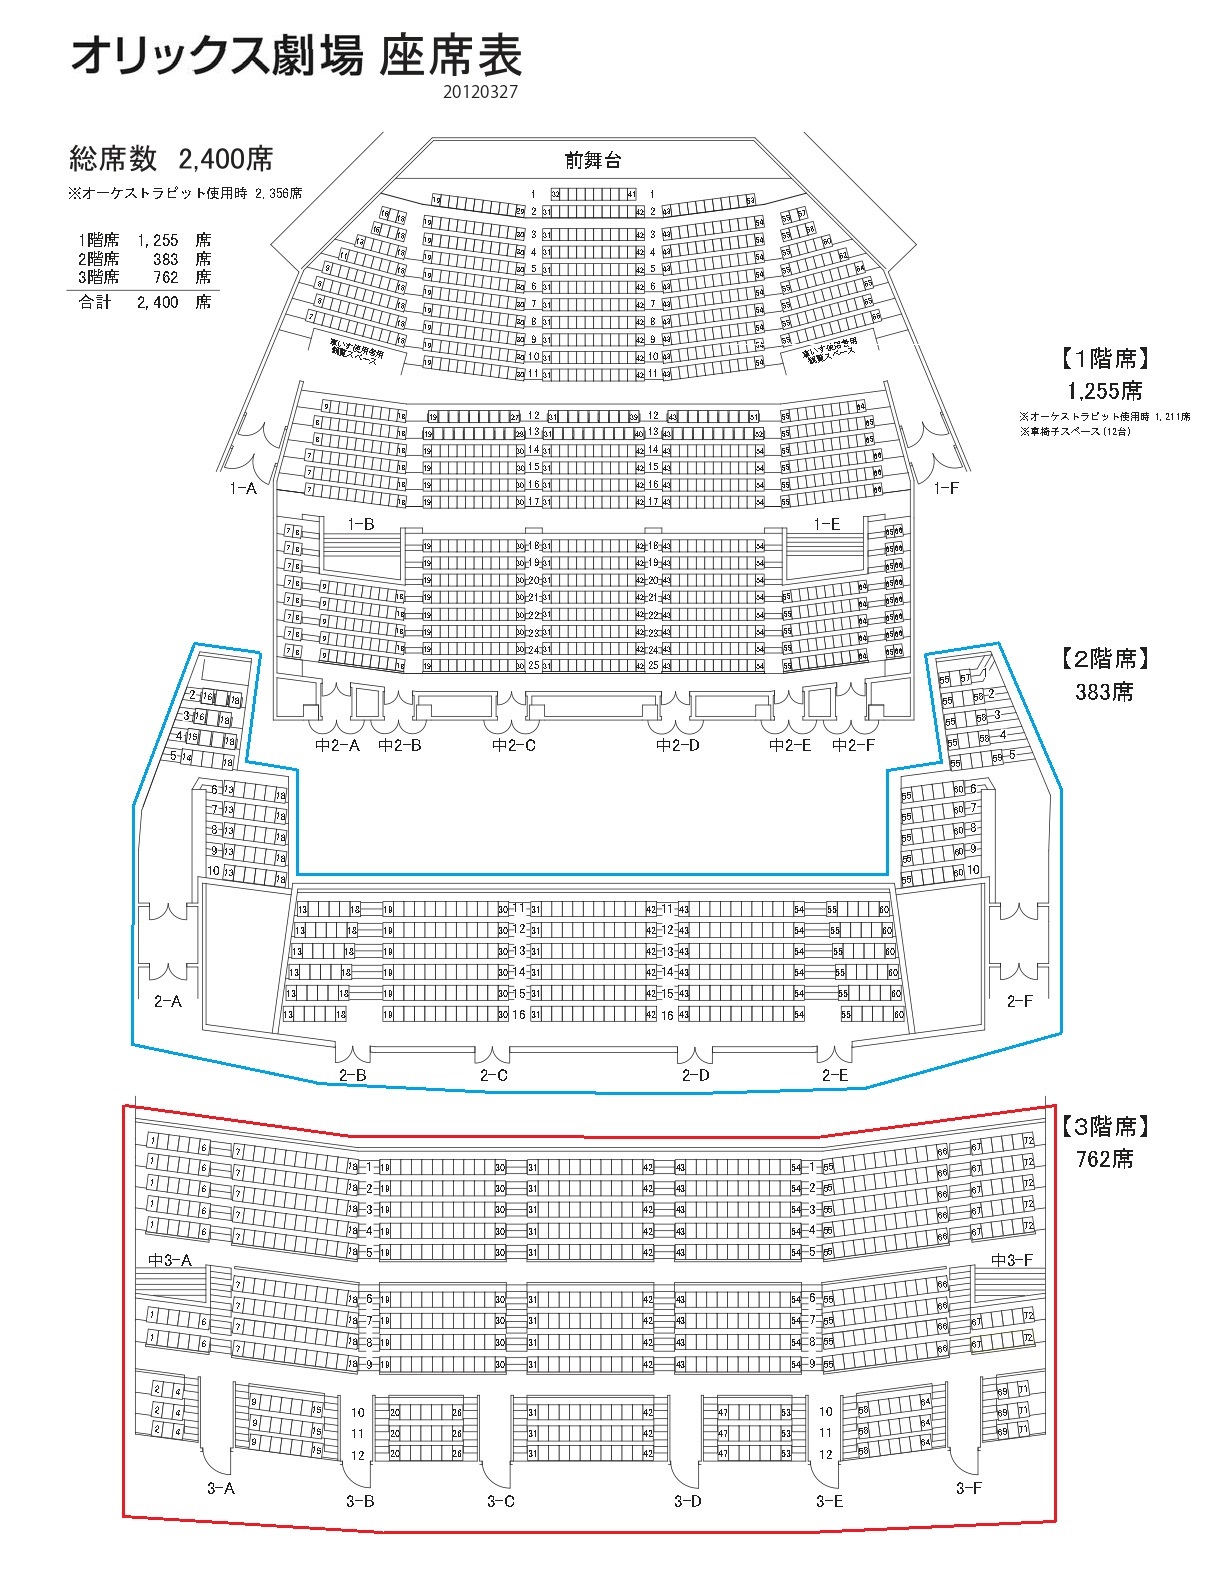 オリックス劇場の座席表 画像付きで2階と3階について解説します 座席ウォッチャー